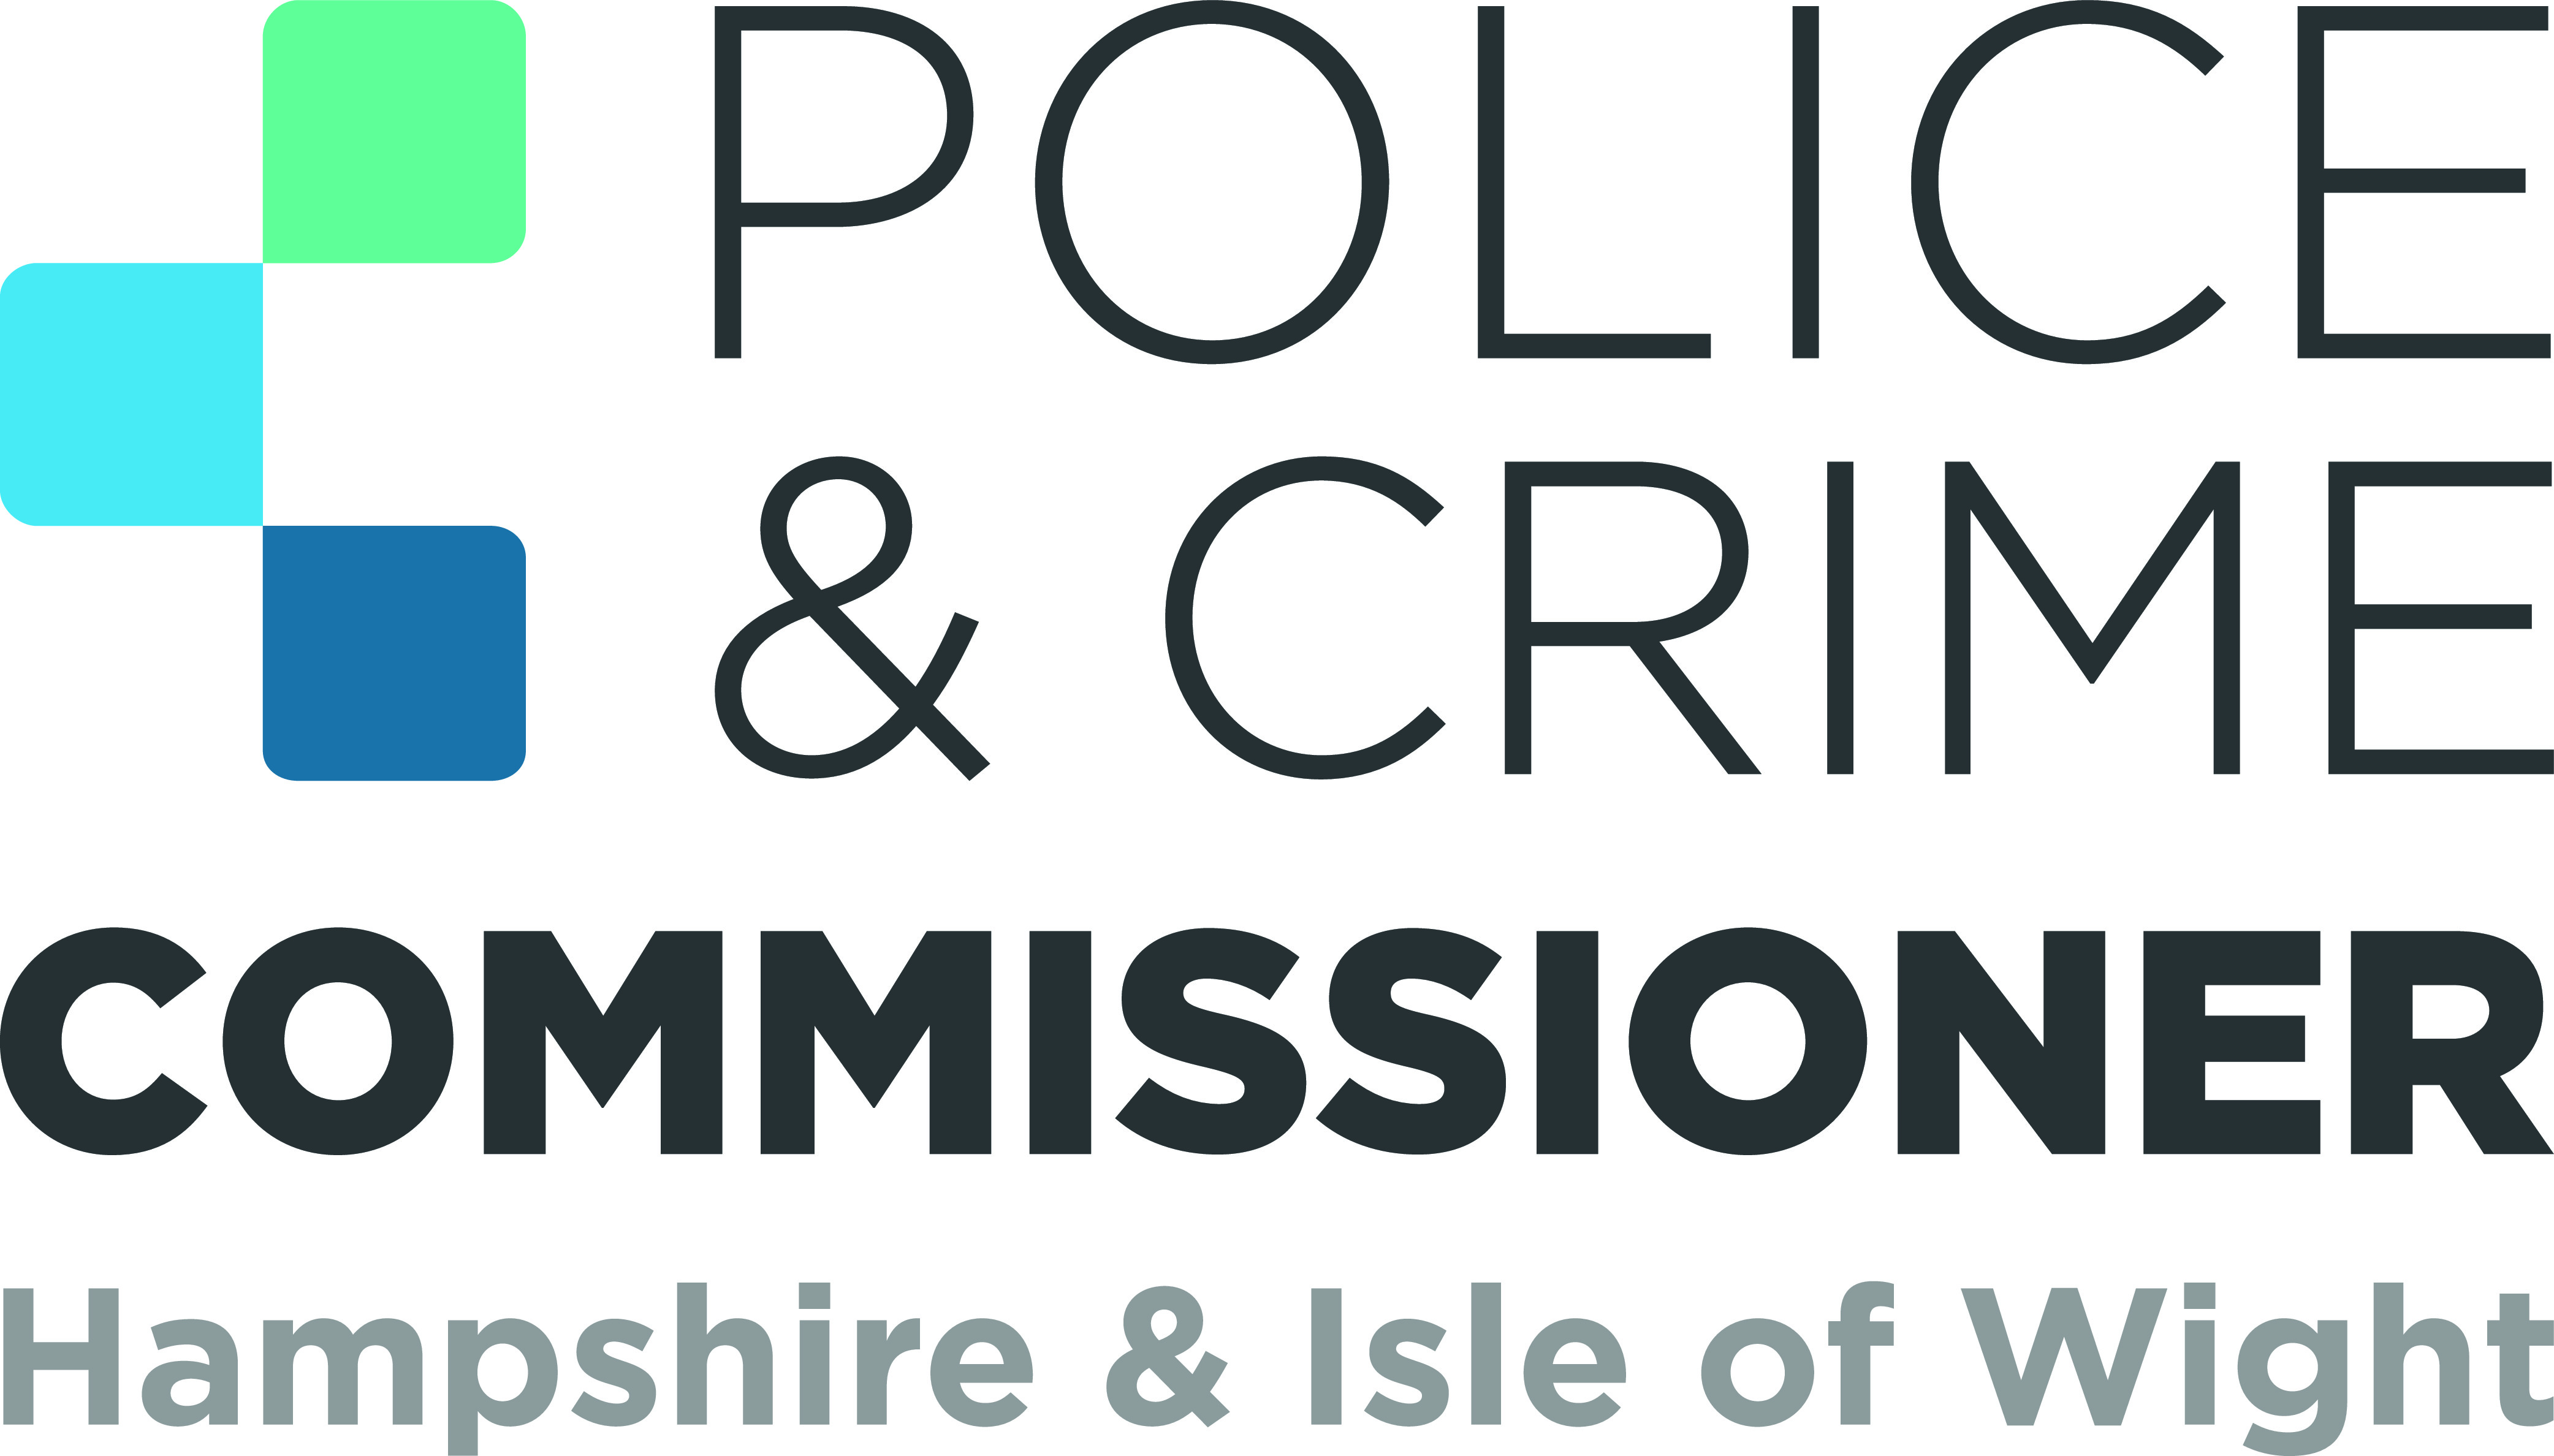 Police & Crime Commissioner logo